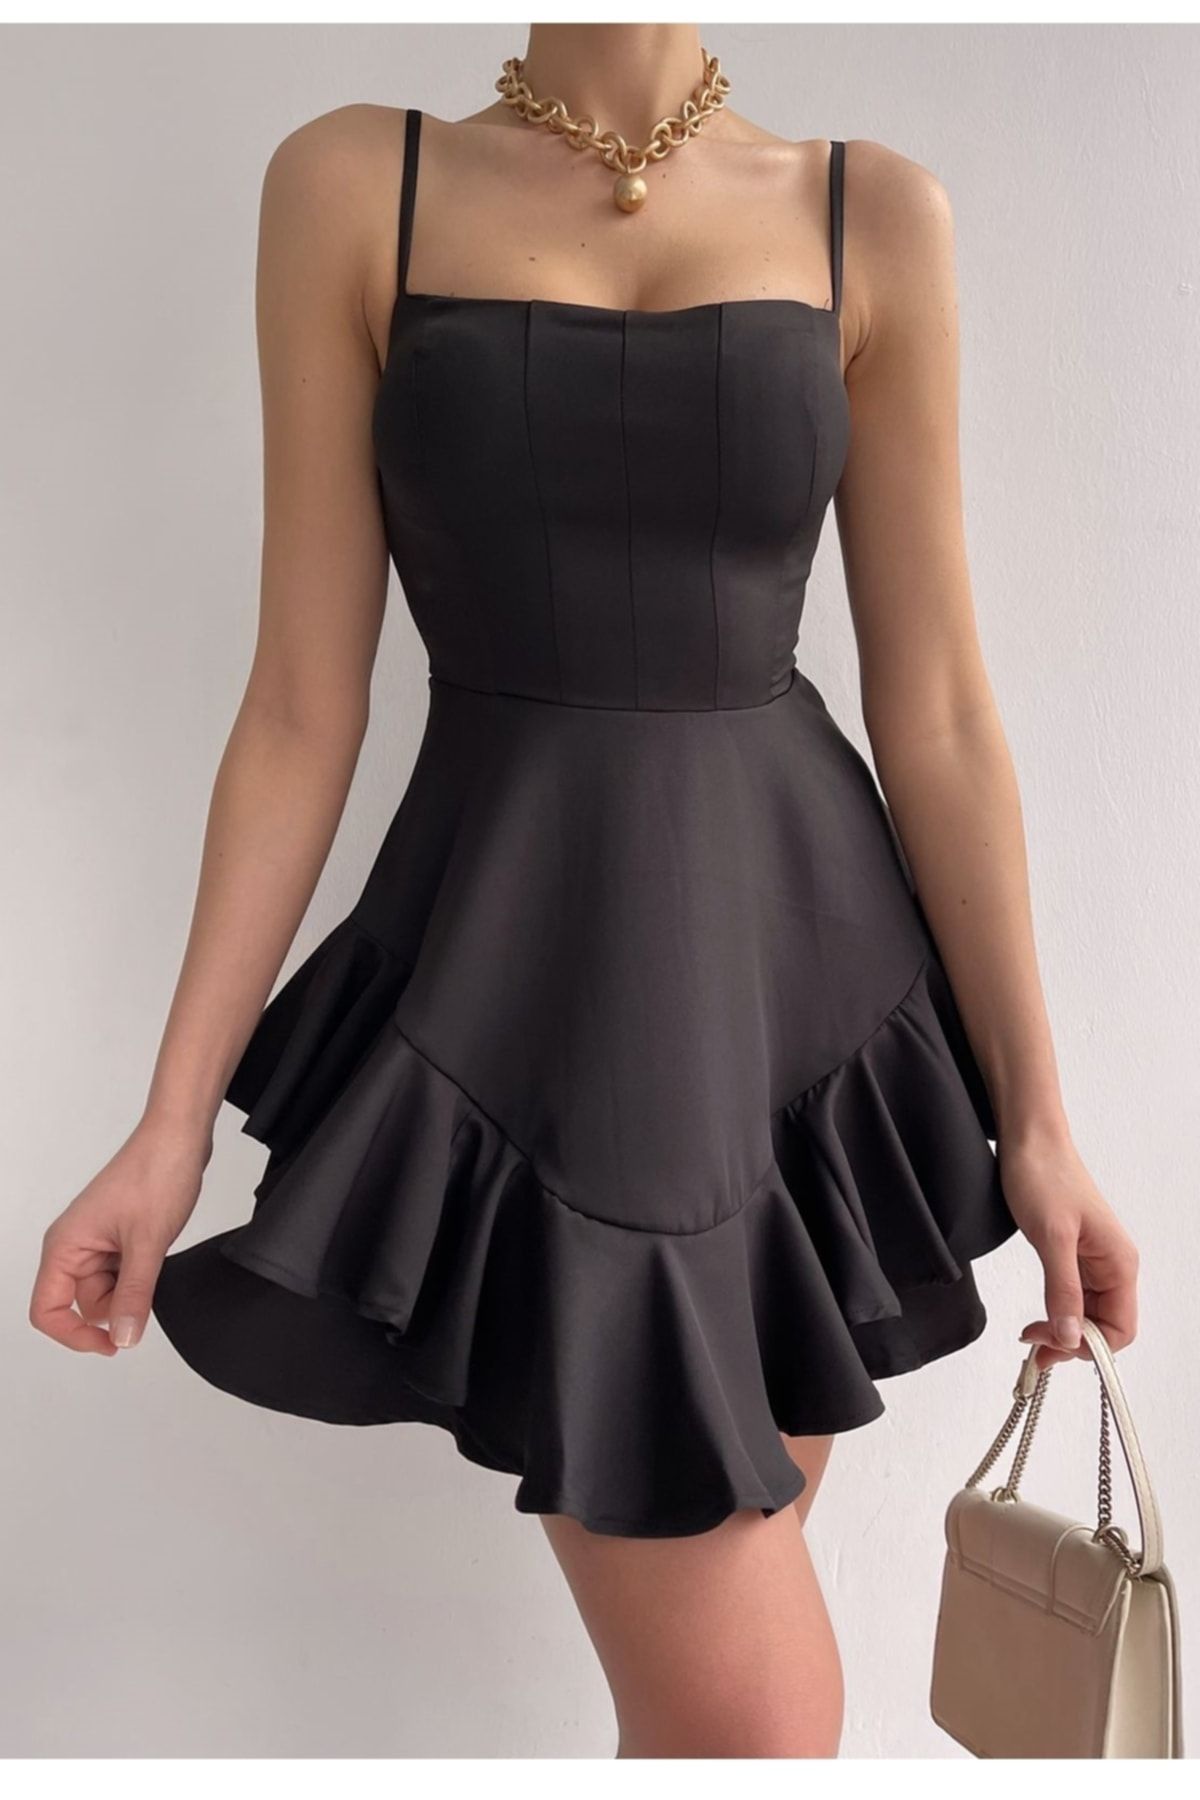 lovebox Ayarlanabilir Ince Askılı Eteği Kat Detaylı Siyah Abiye Elbise & Siyah Mezuniyet Elbisesi 102